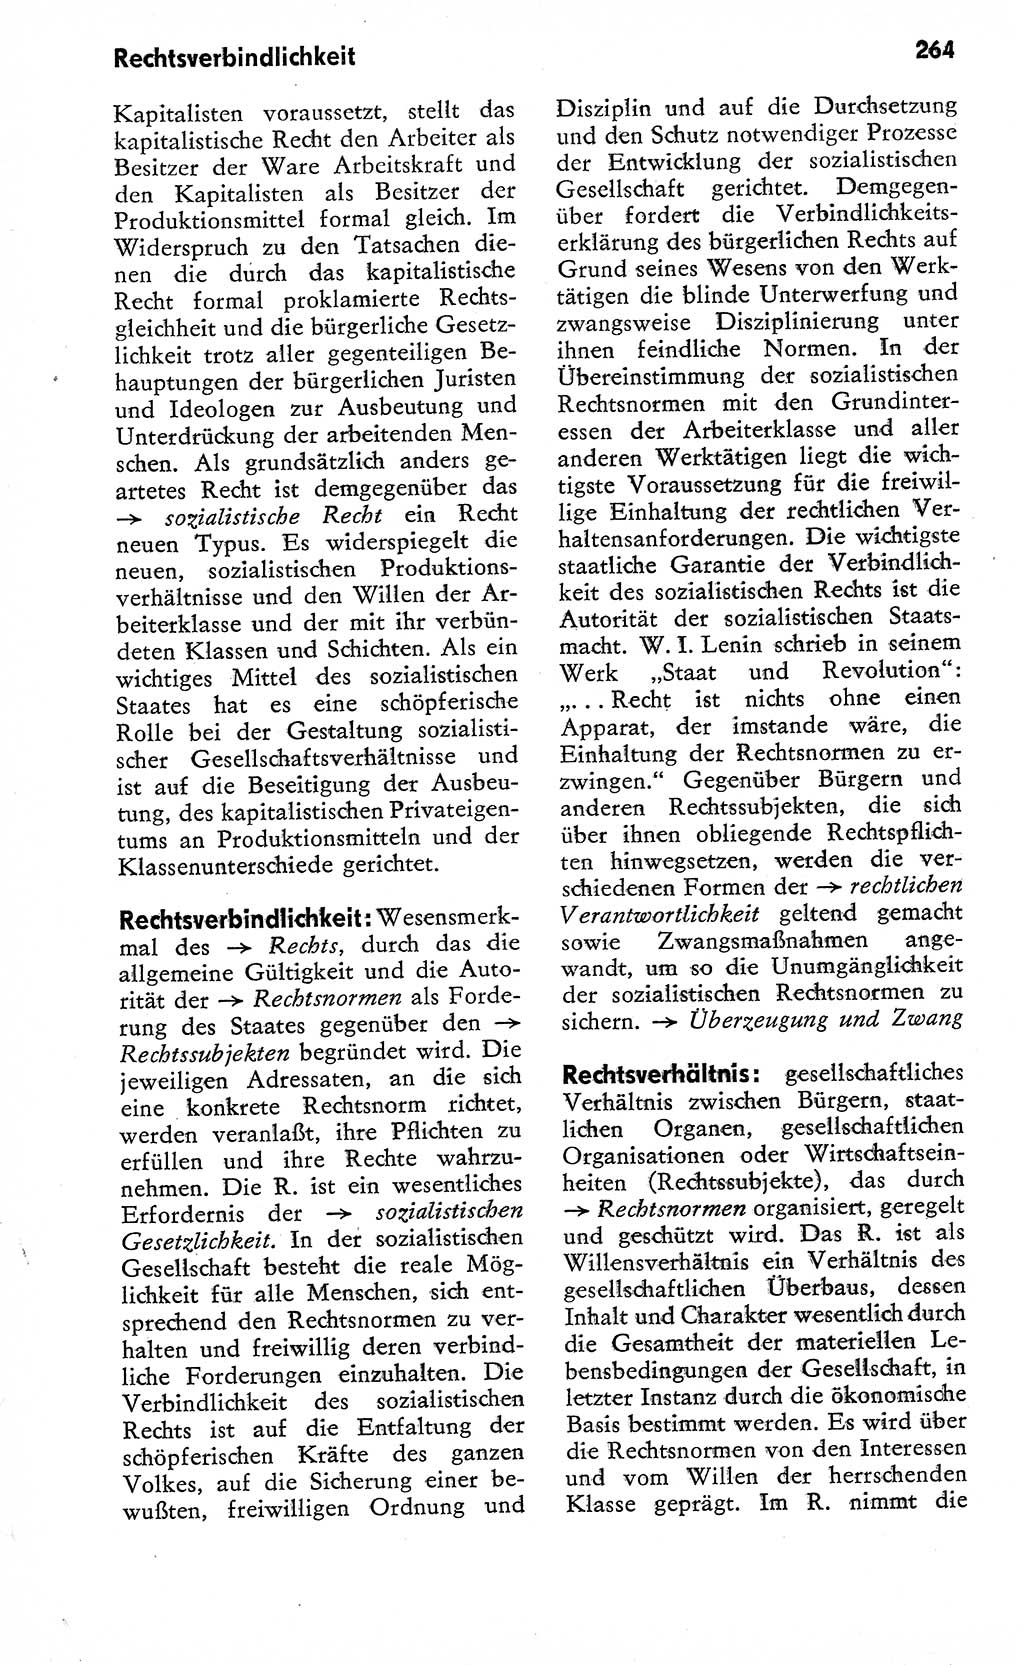 Wörterbuch zum sozialistischen Staat [Deutsche Demokratische Republik (DDR)] 1974, Seite 264 (Wb. soz. St. DDR 1974, S. 264)